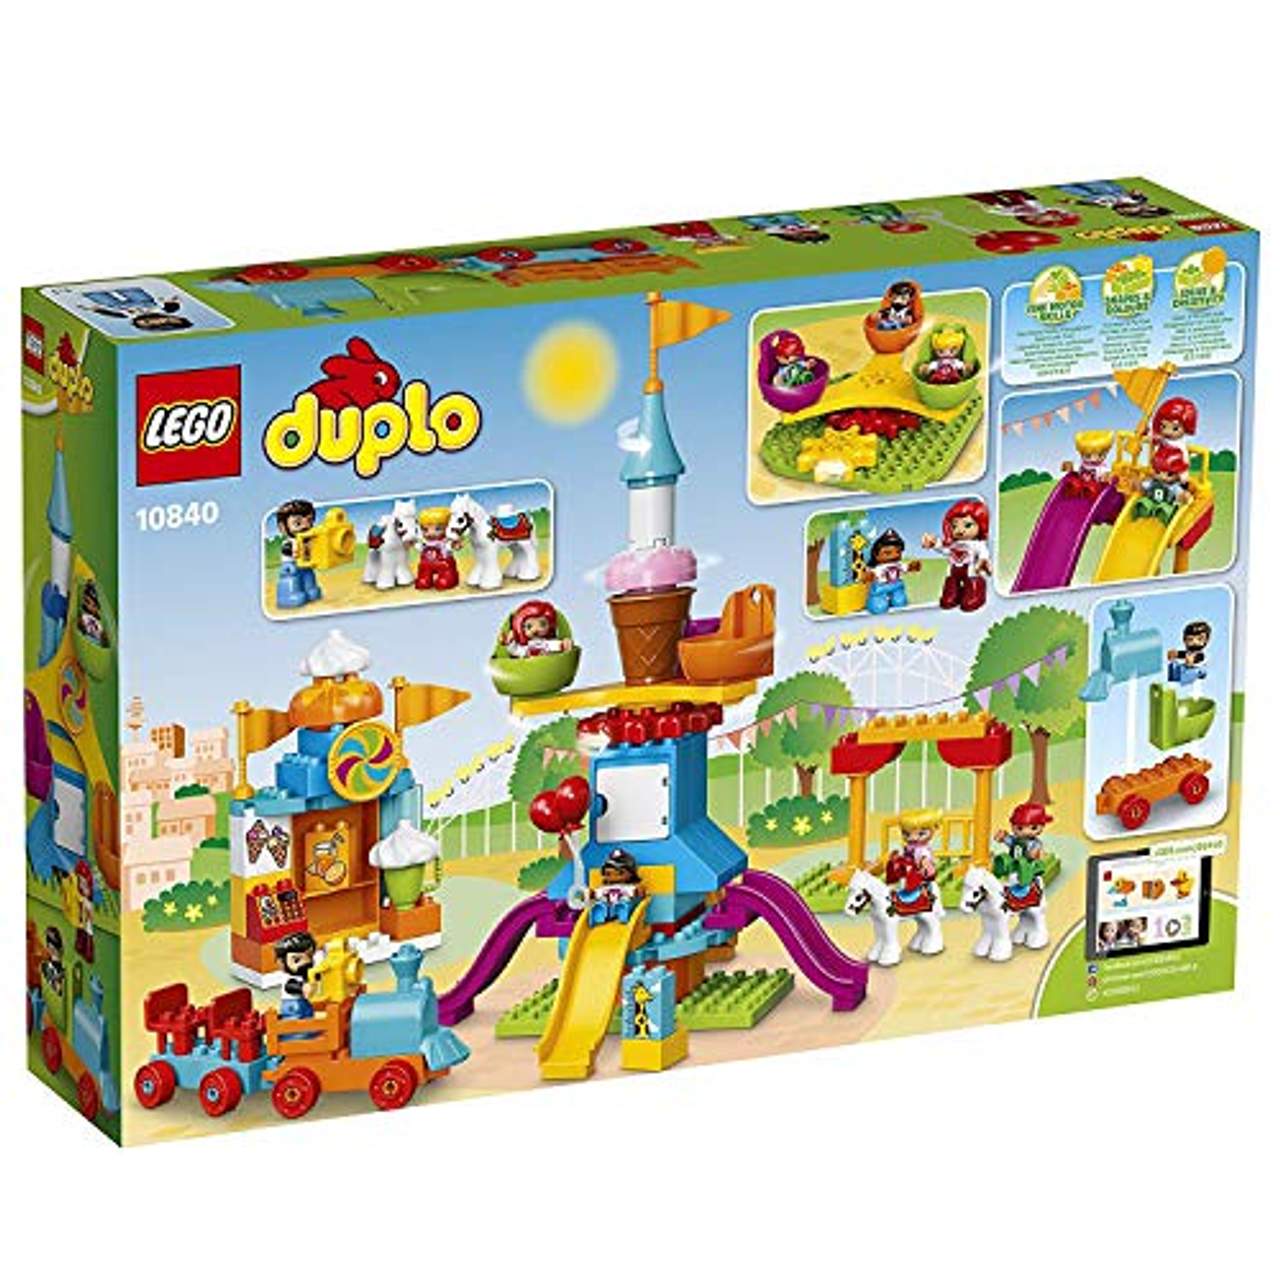 LEGO Duplo 10840 Großer Jahrmarkt